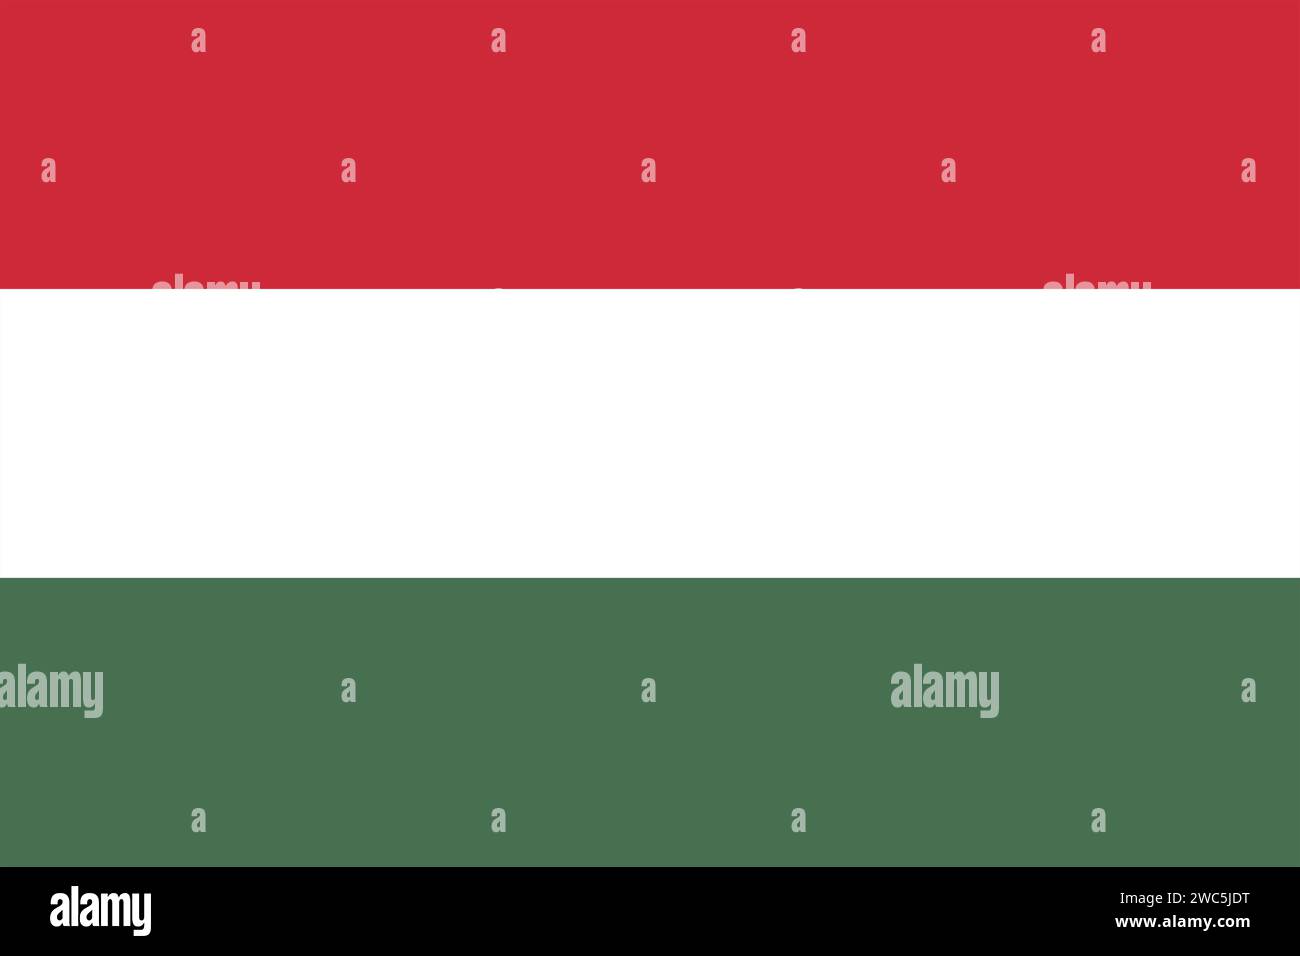 La bandiera nazionale dell'Ungheria sullo sfondo con i colori ufficiali corretti, ovvero un tricolore di bande orizzontali di rosso, bianco e verde Foto Stock